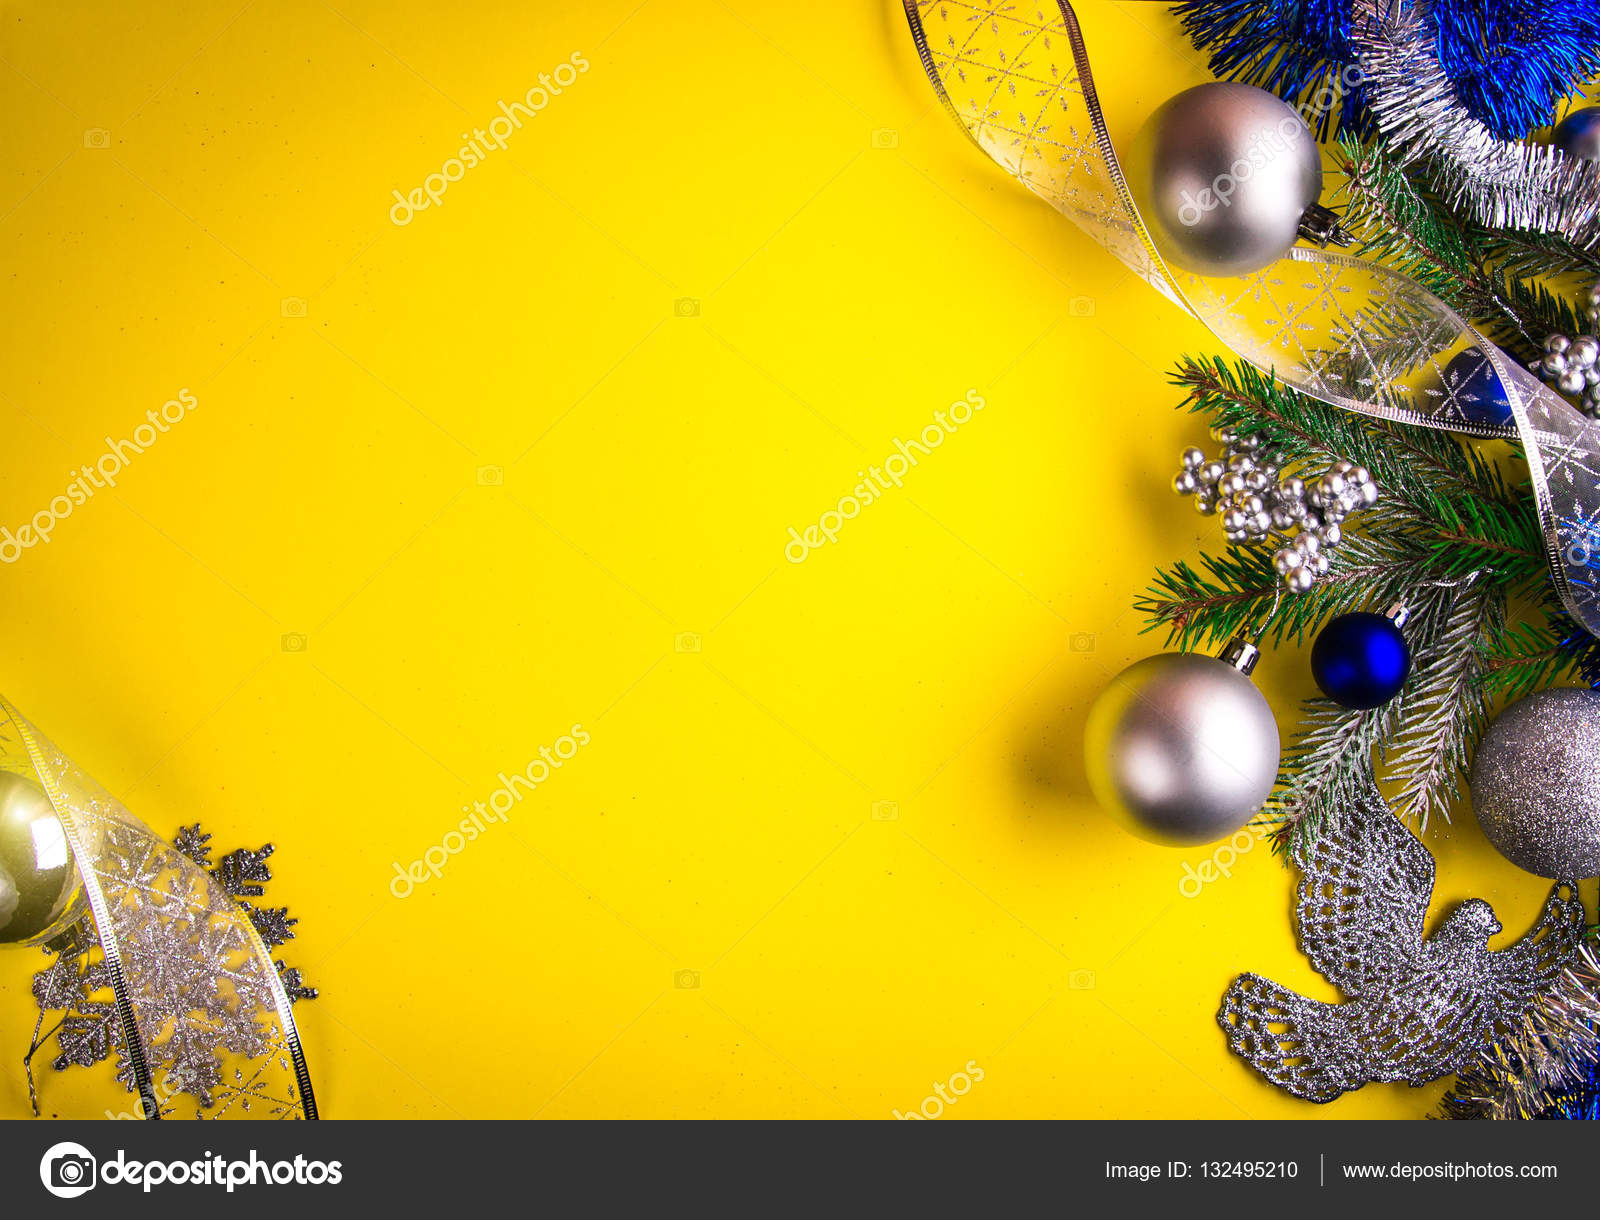 Bạn muốn tìm kiếm một hình nền Noel vàng thật hoàn hảo để decorate cho mùa lễ? Hình ảnh được chụp bởi ©maryviolet 132495210 chắc chắn sẽ là lựa chọn sáng suốt nhất cho bạn. Hãy khám phá ngay để tìm được bức ảnh phù hợp cho không gian của bạn.